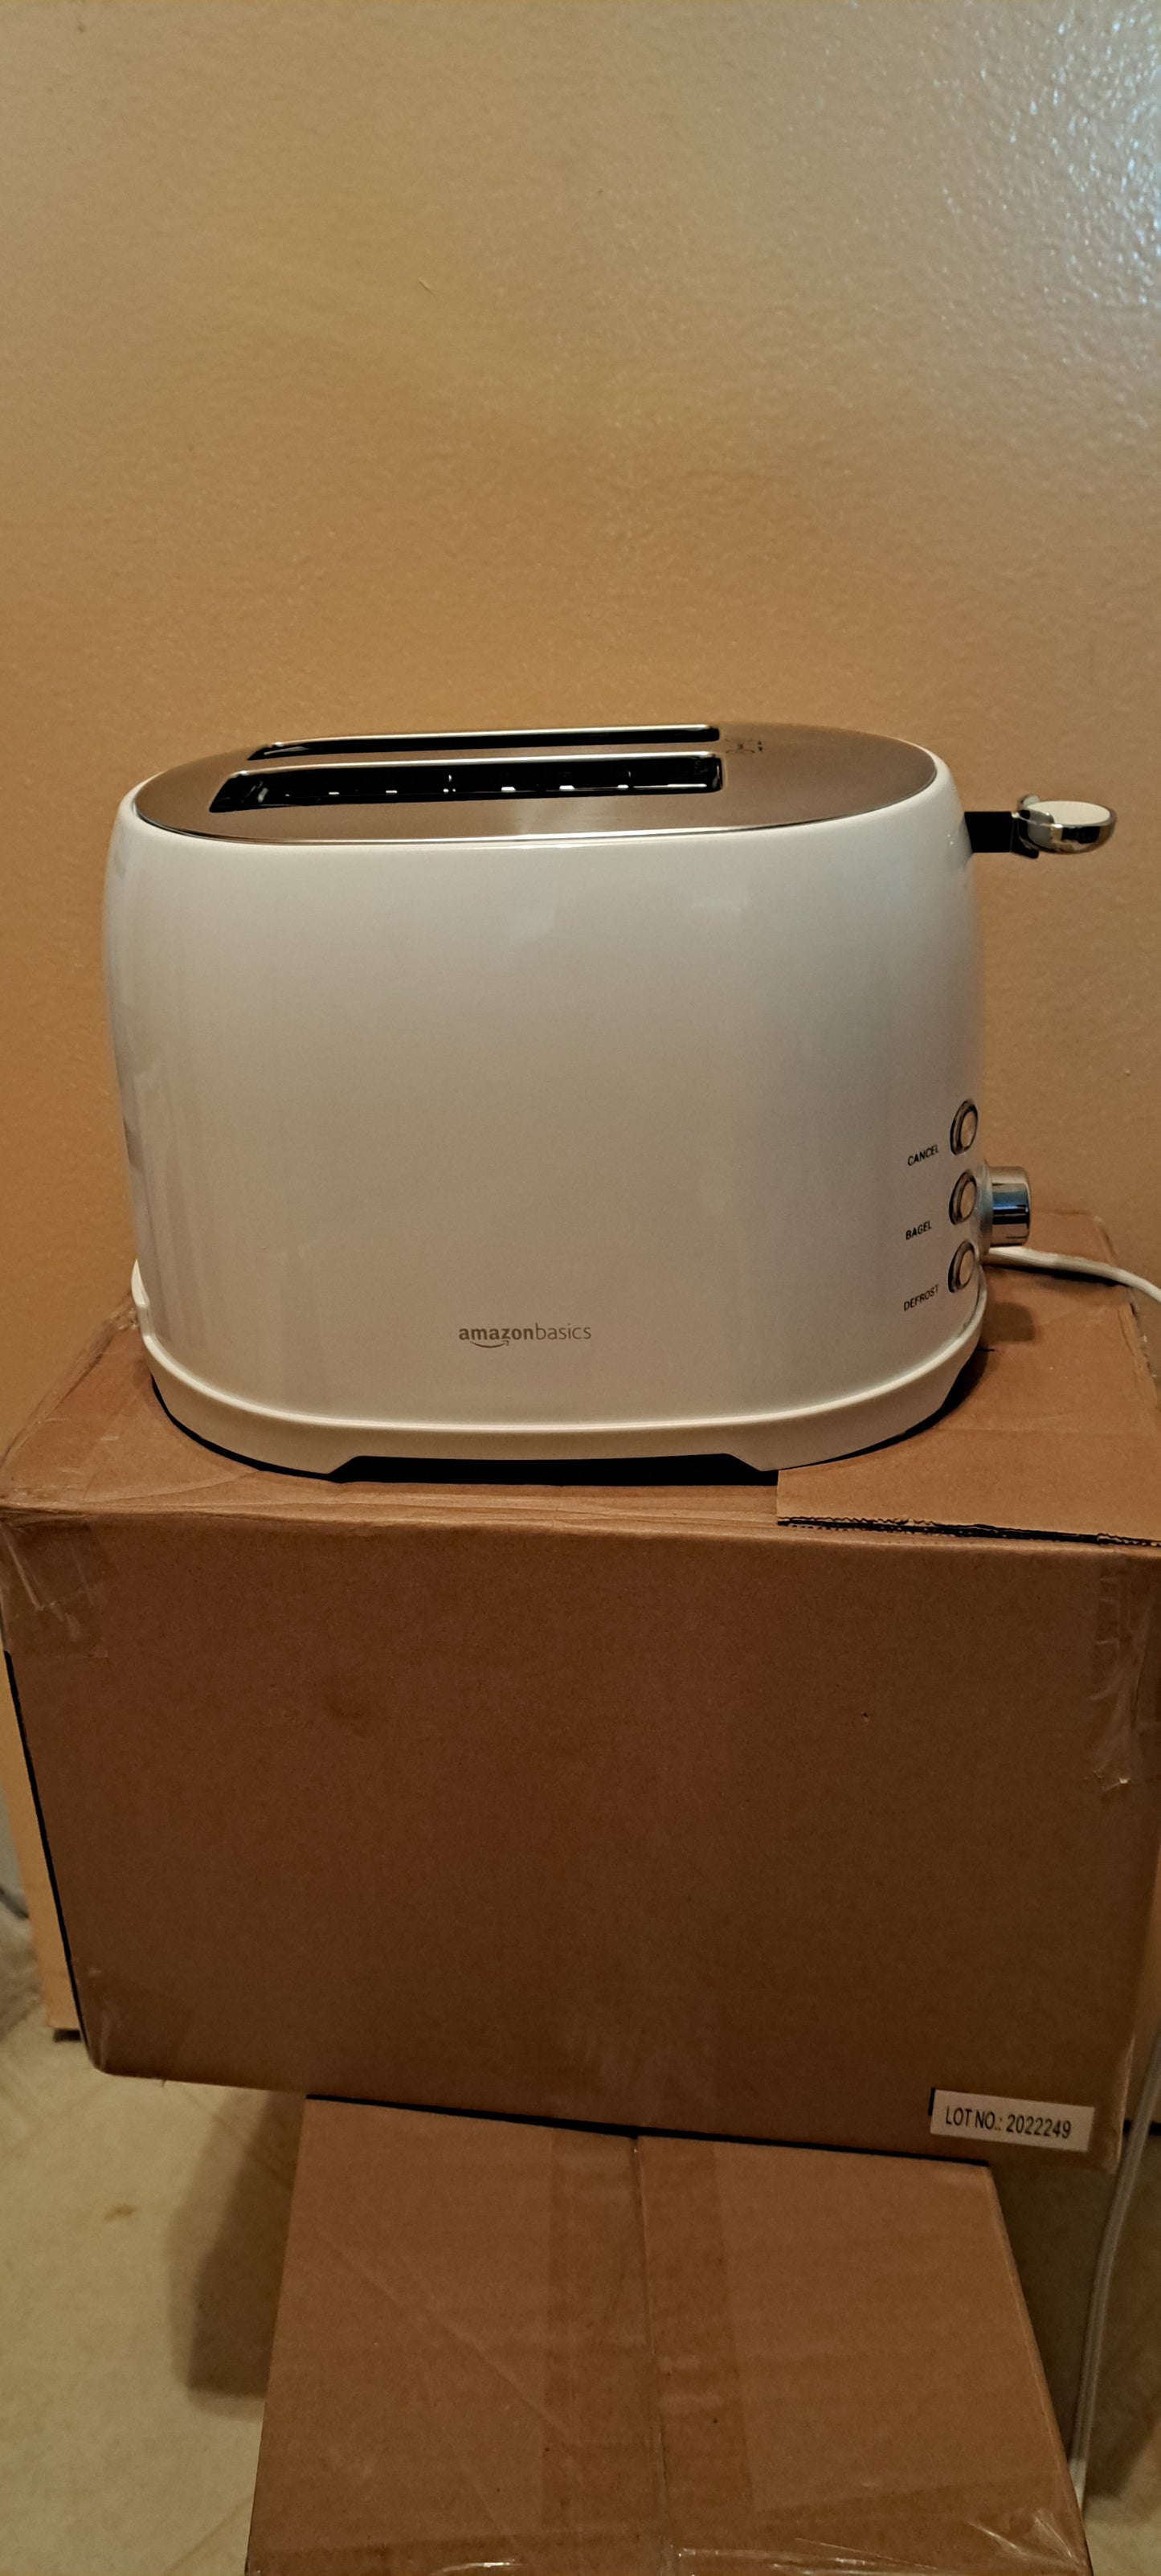 Amazon basic toaster